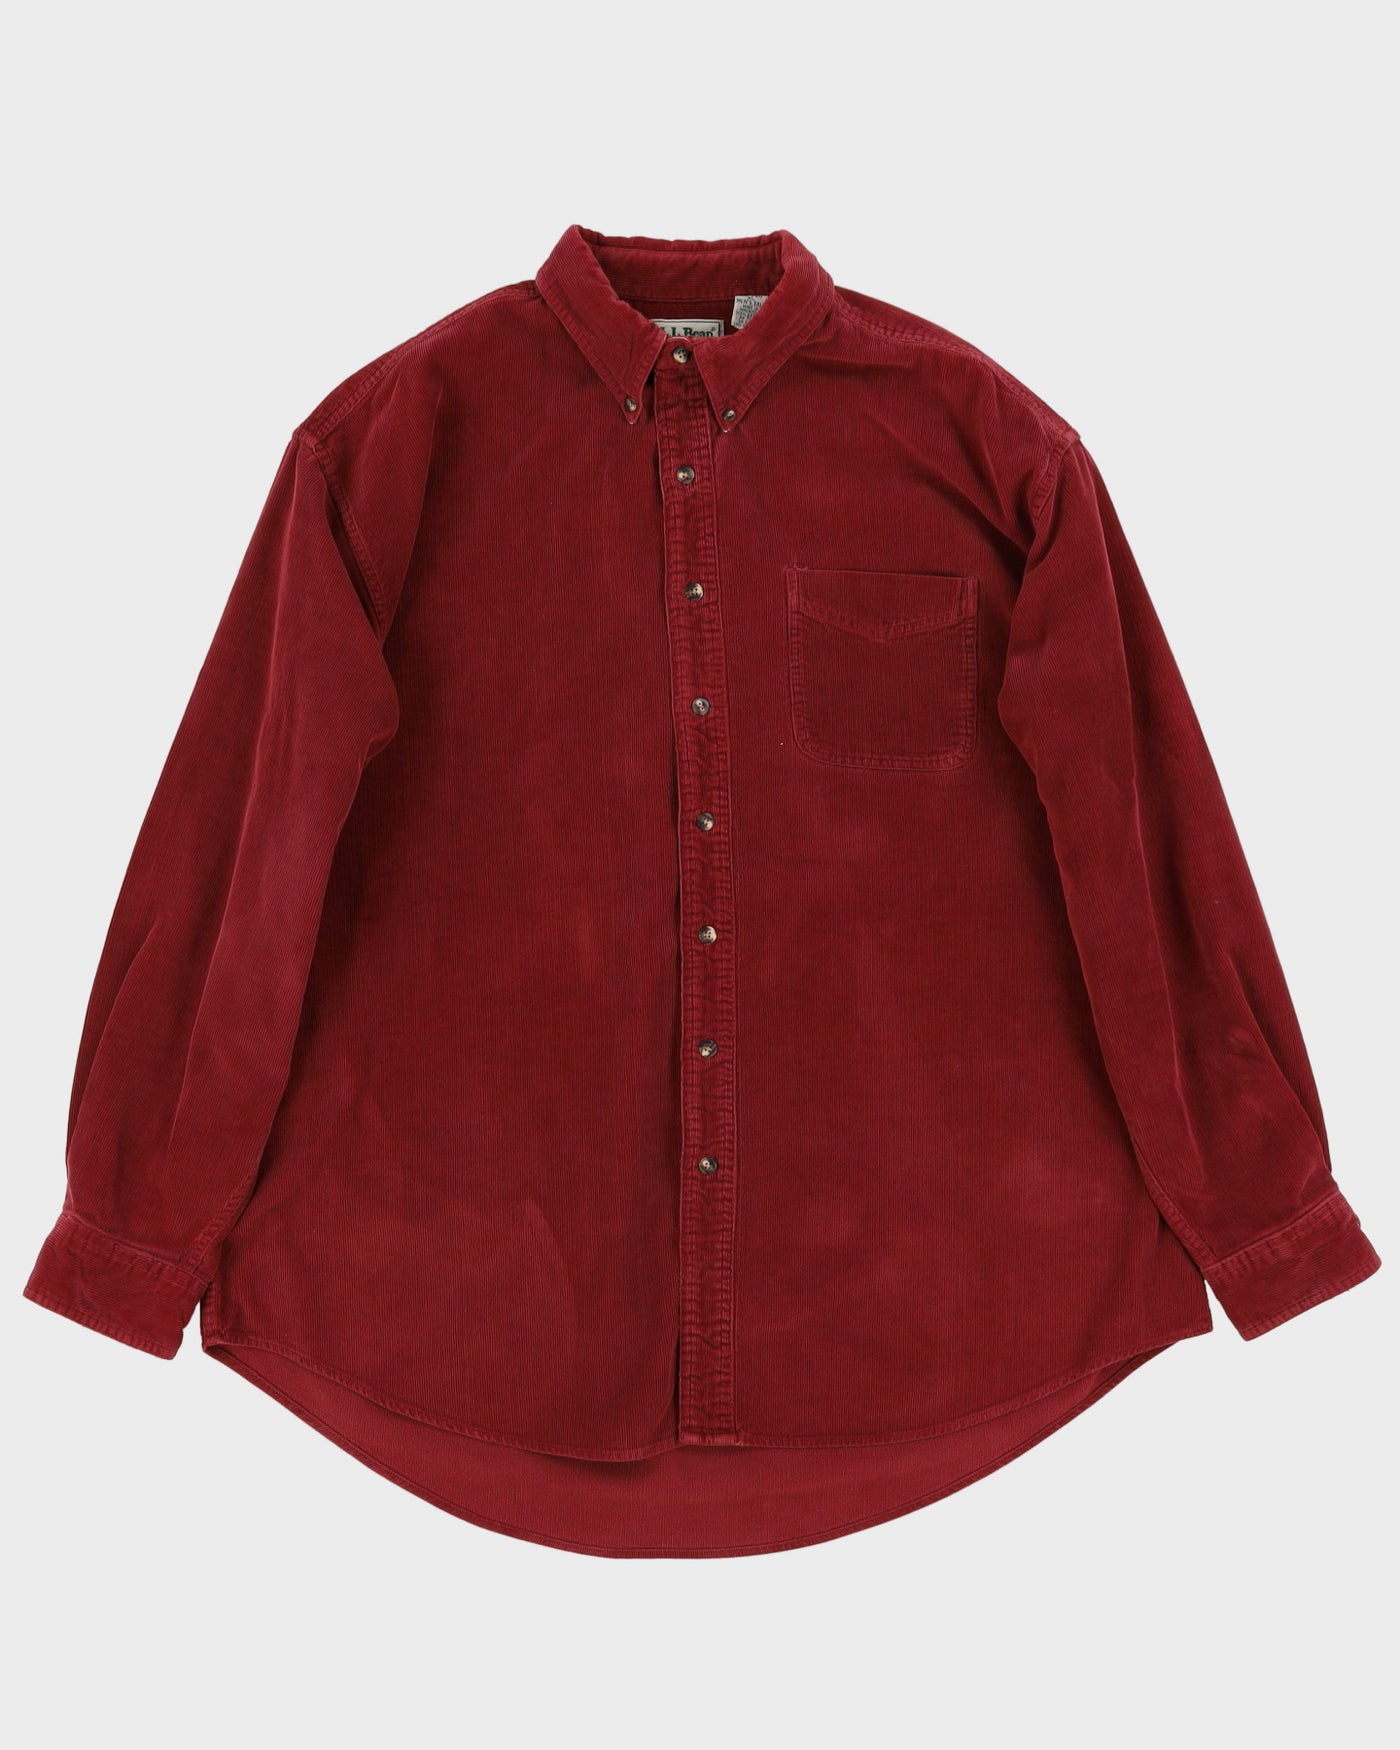 L.L. Bean Maroon Cord Shirt - XXXL